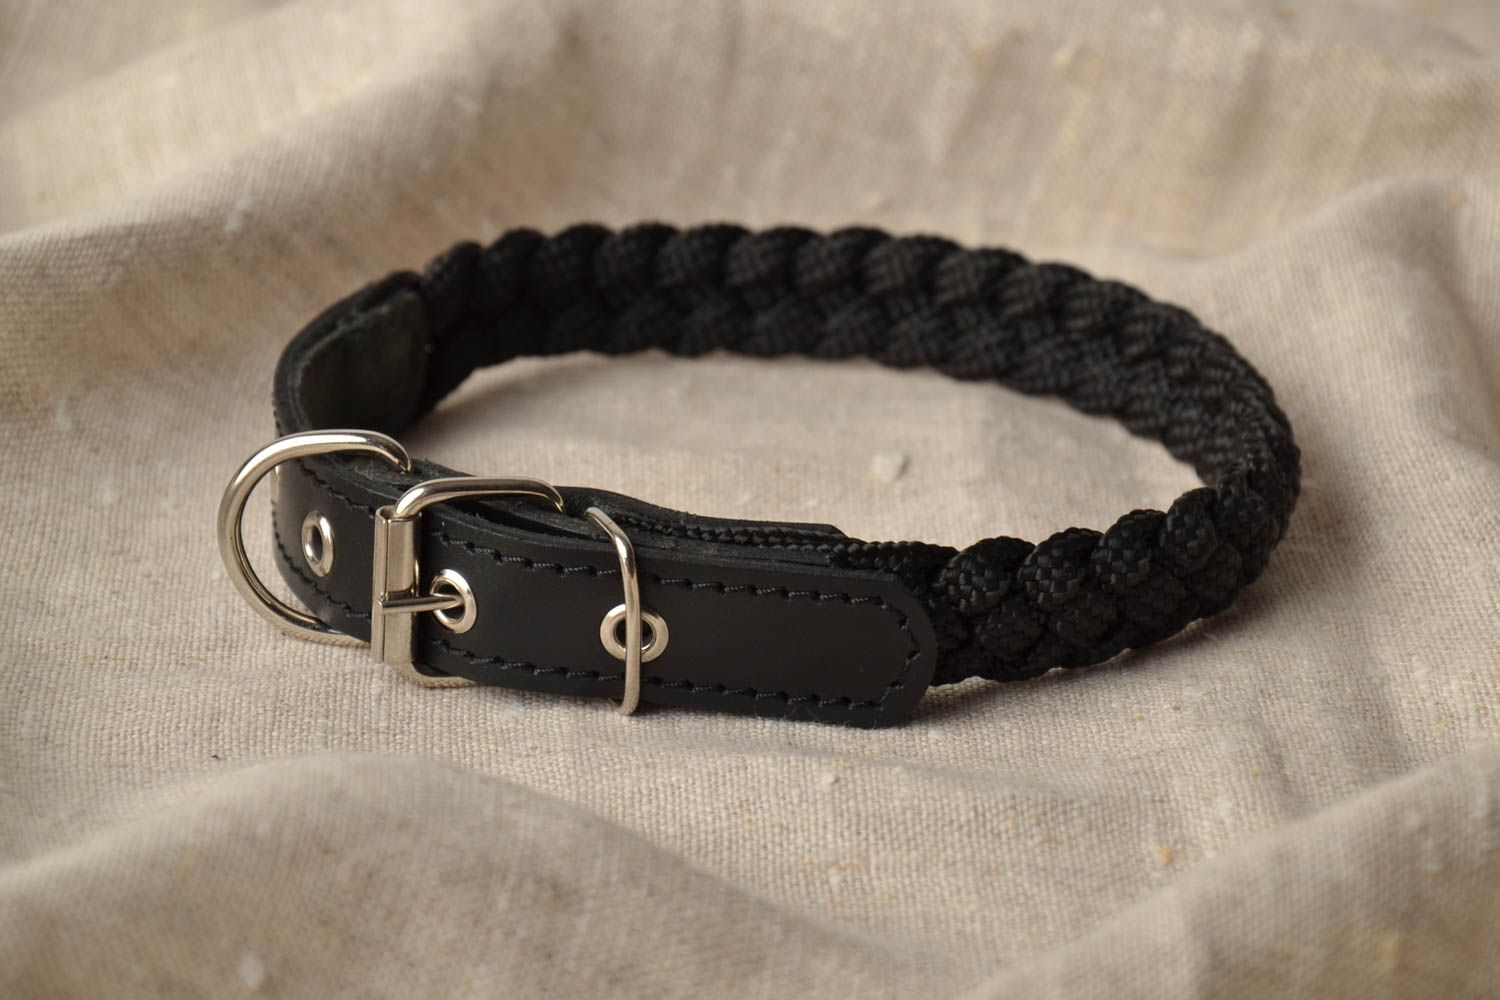 Textil Halsband für Hund in Schwarz foto 1